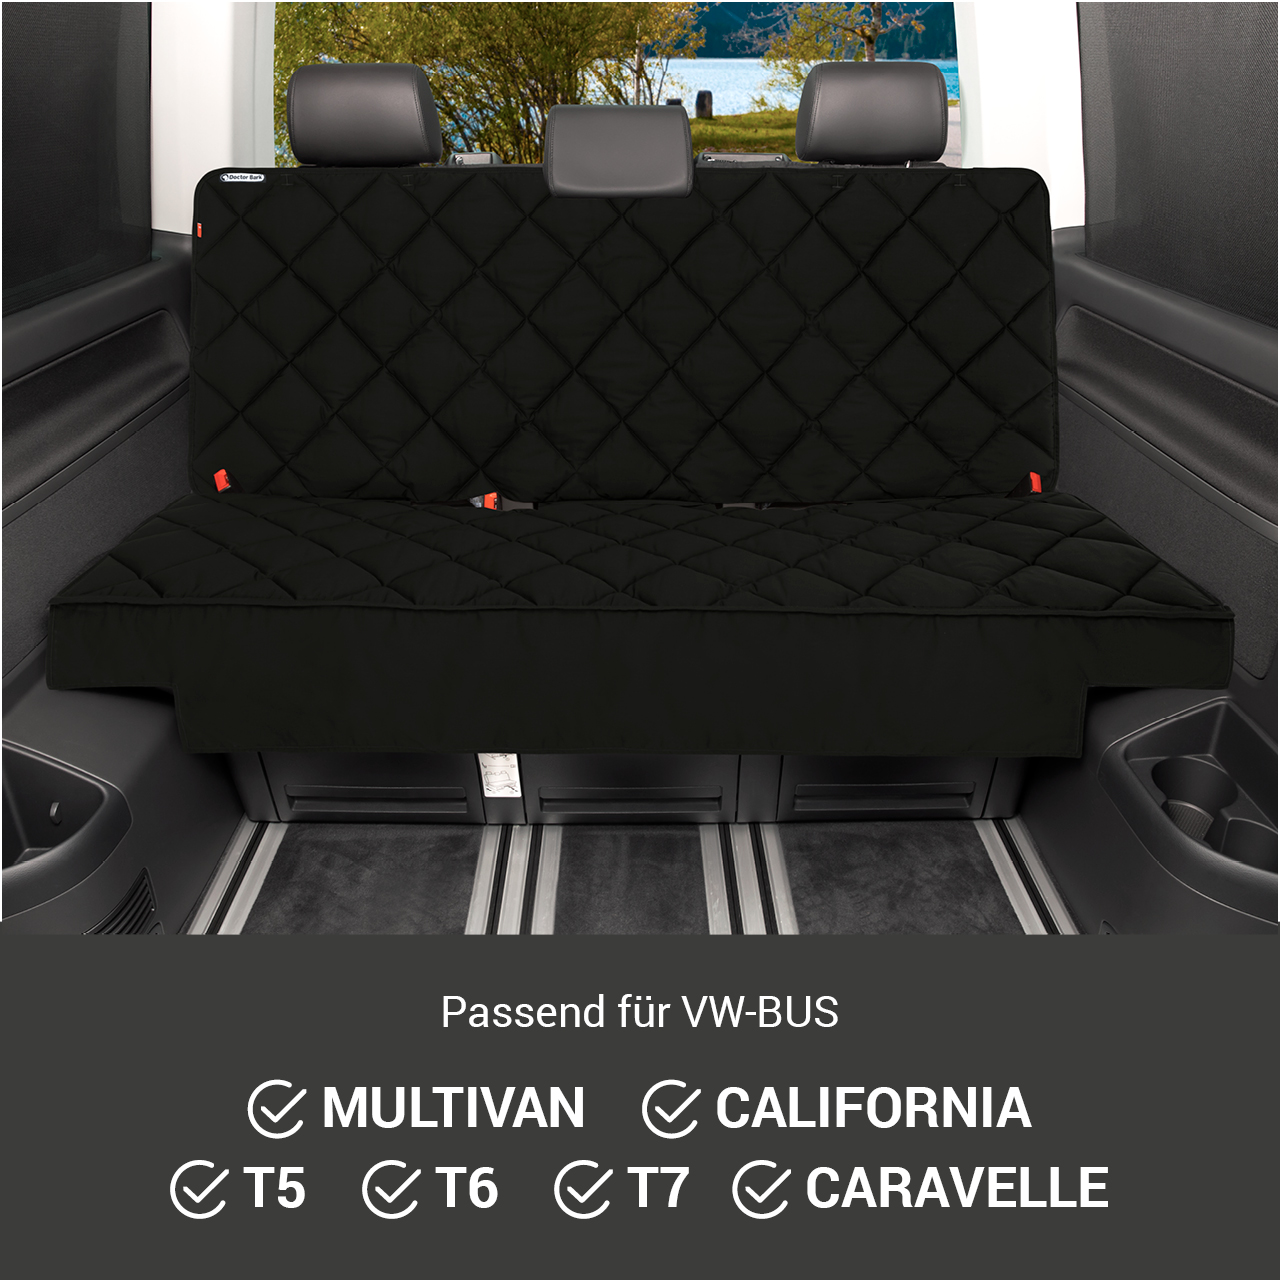 3-Sitz Auto-Sitzauflage VW Multivan - Schwarz